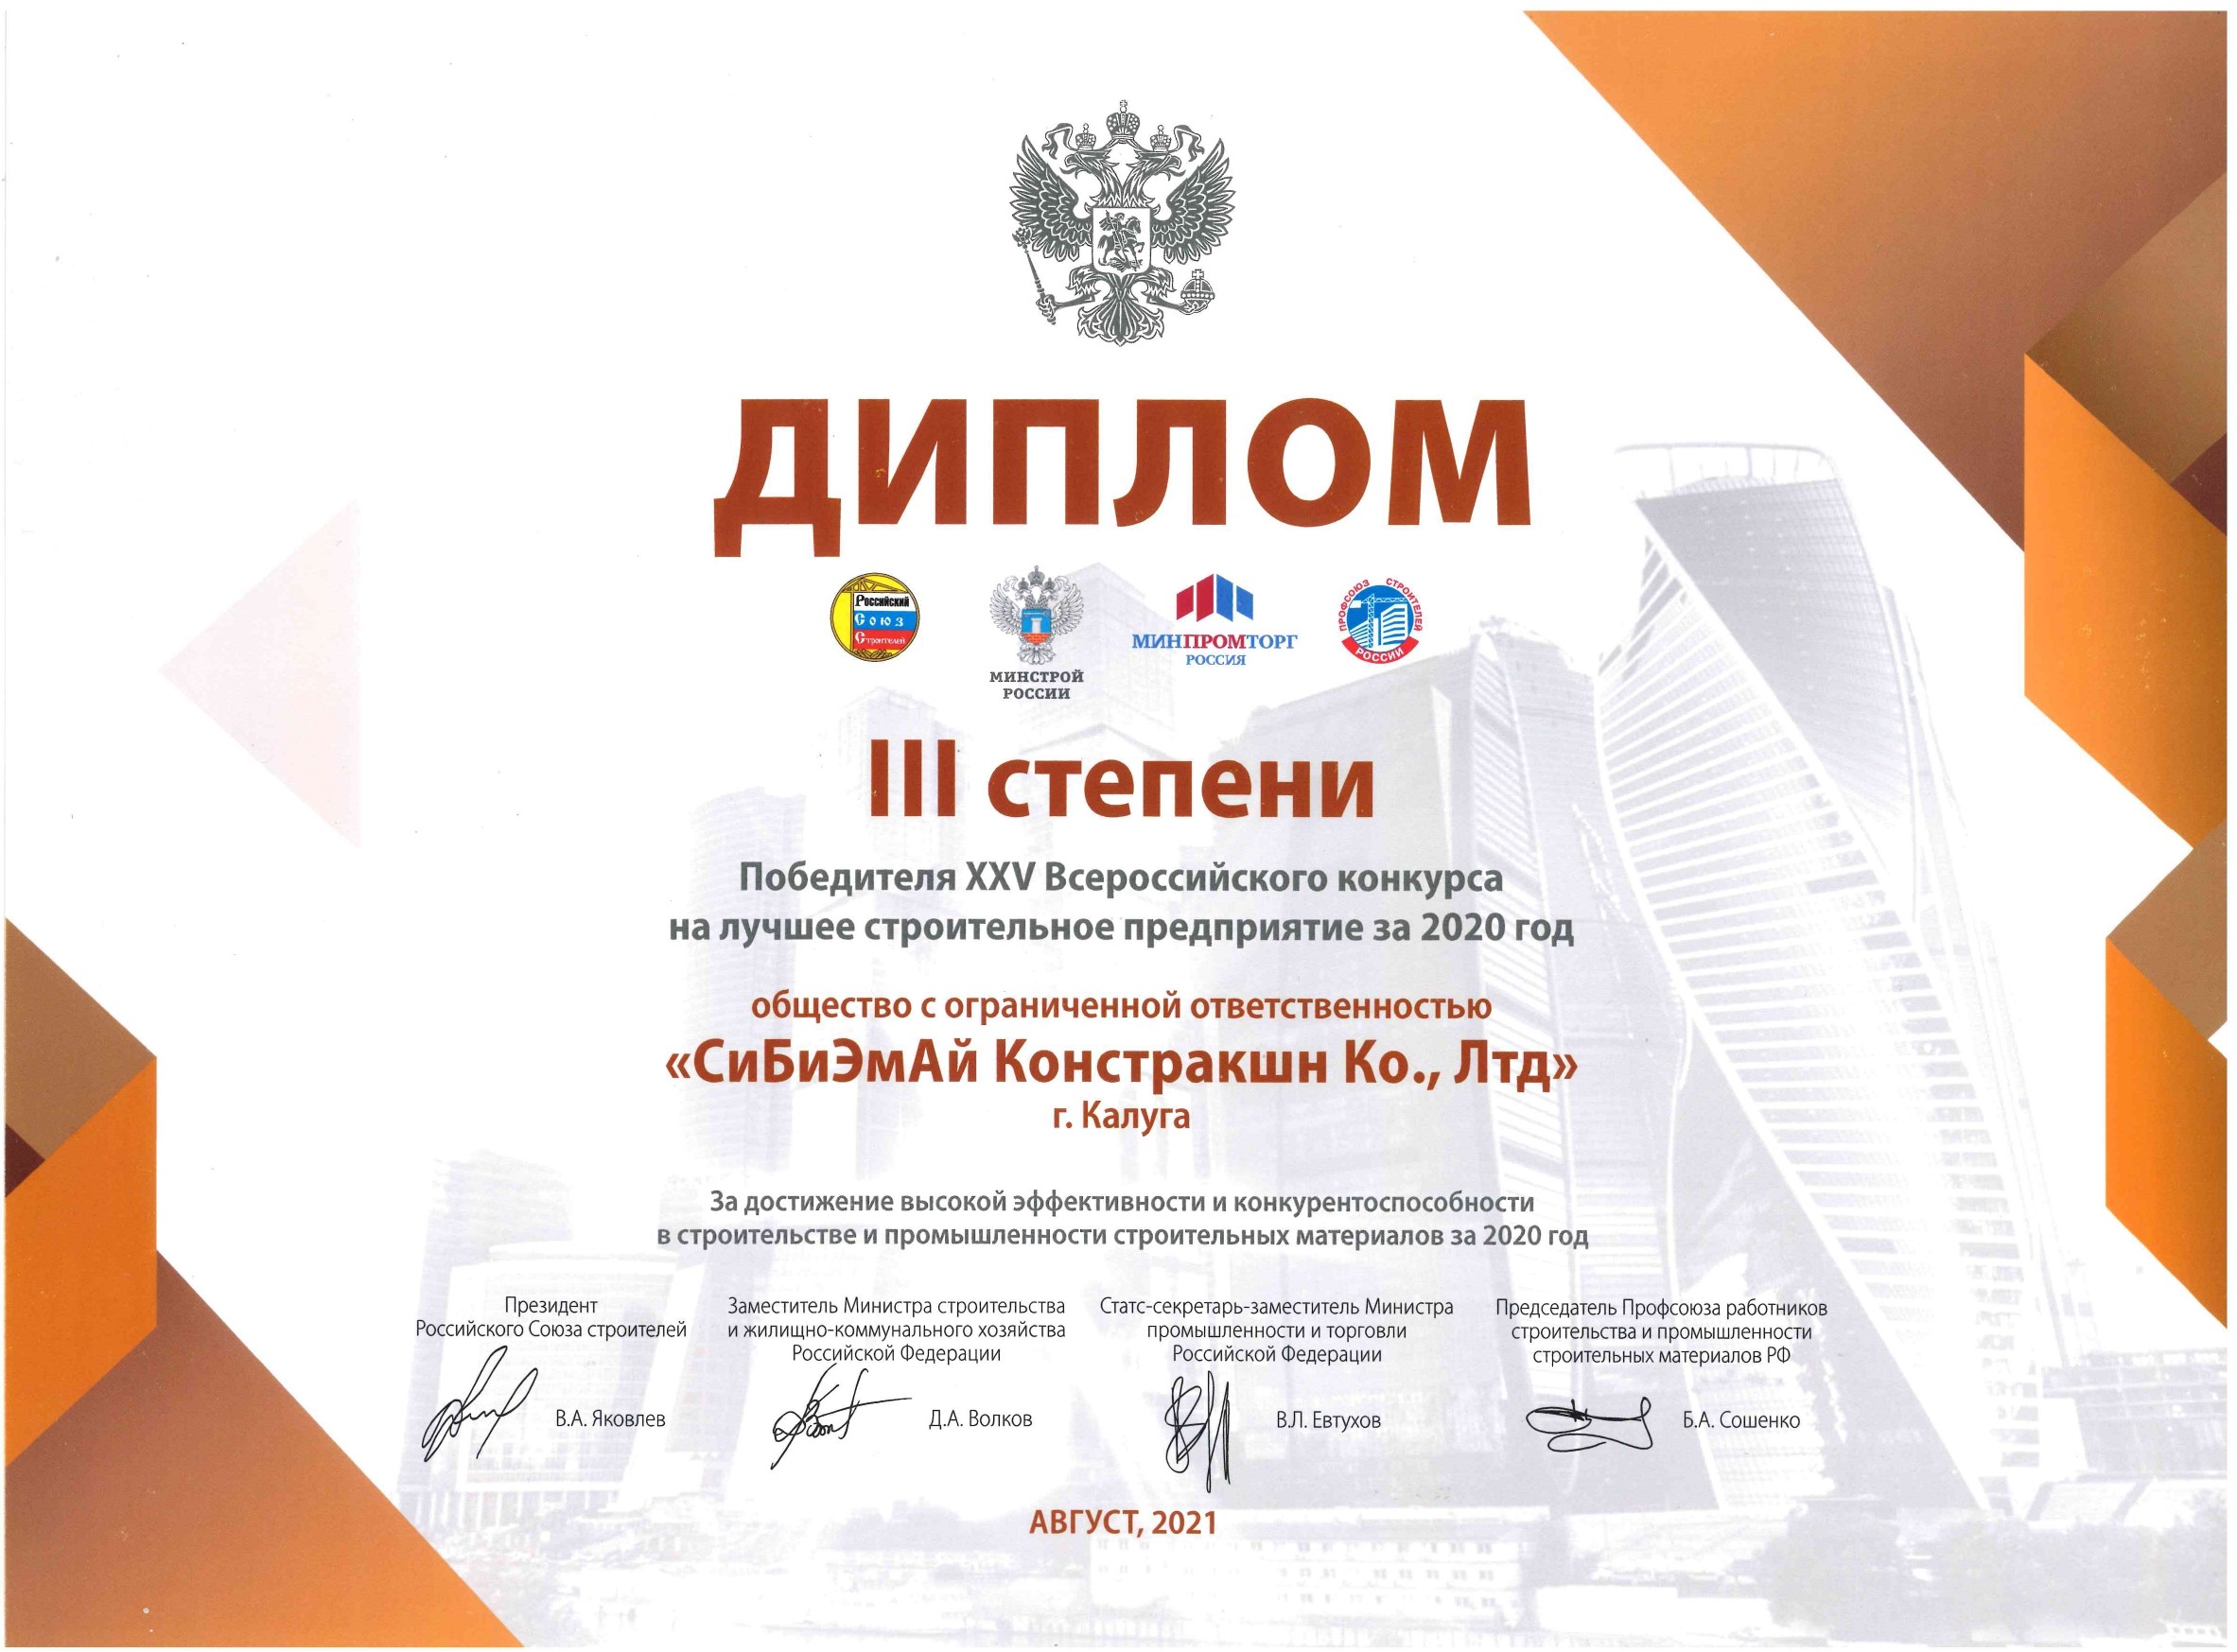 Sinoma CBMI стала победителем XXV Всероссийского конкурса на лучшее строительное предприятие за 2020 год